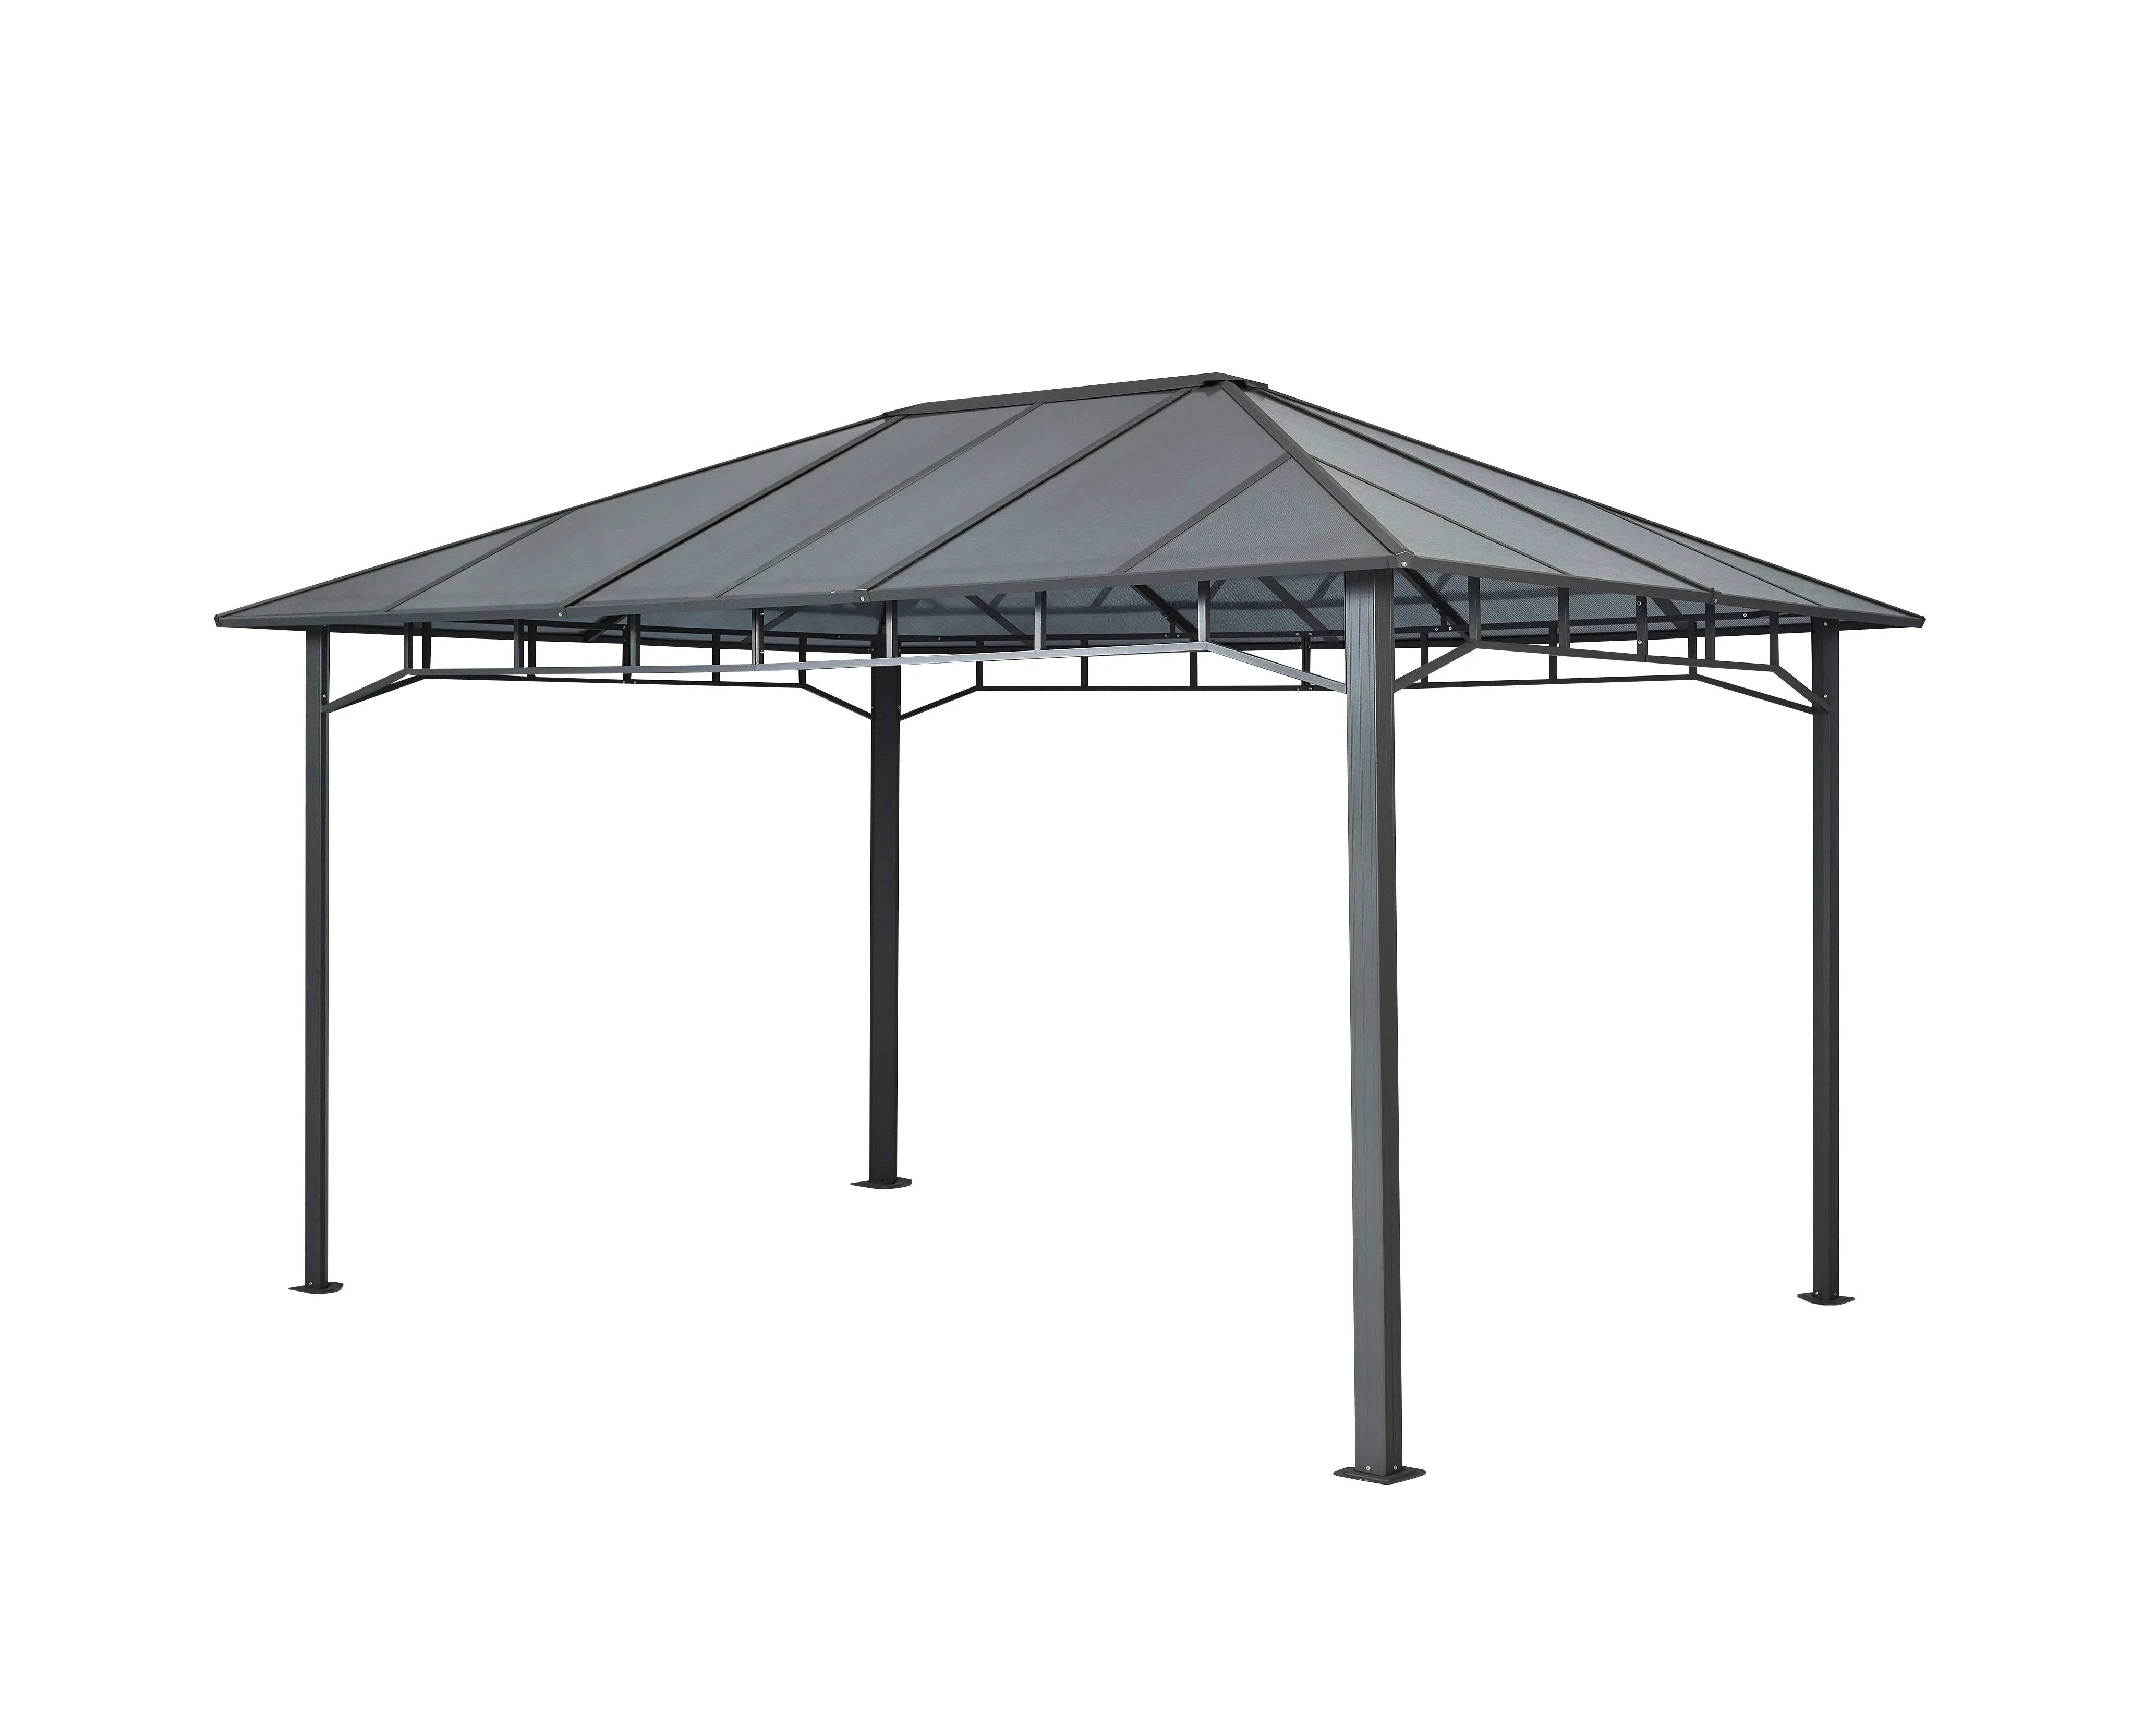 Tetto solido alluminio giardino esterno Patio grande 3*4m Hardtop tenda parasole partito struttura in metallo zincato gazebo personalizzati di lusso